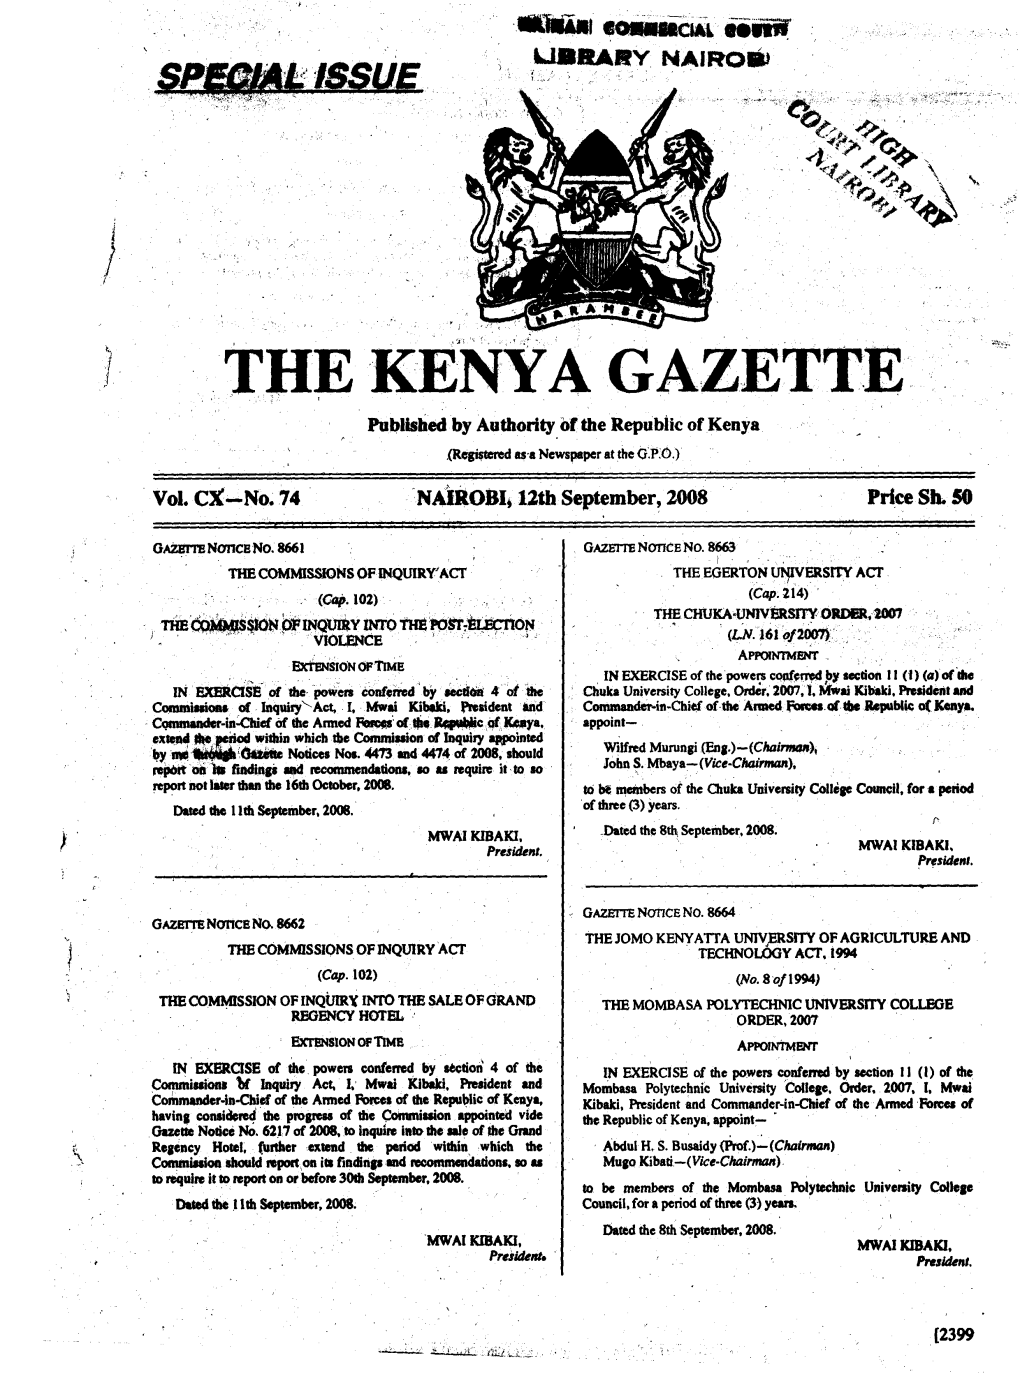 TIW KENYA GAZETTE Published by Authority of the Republic of Kenya